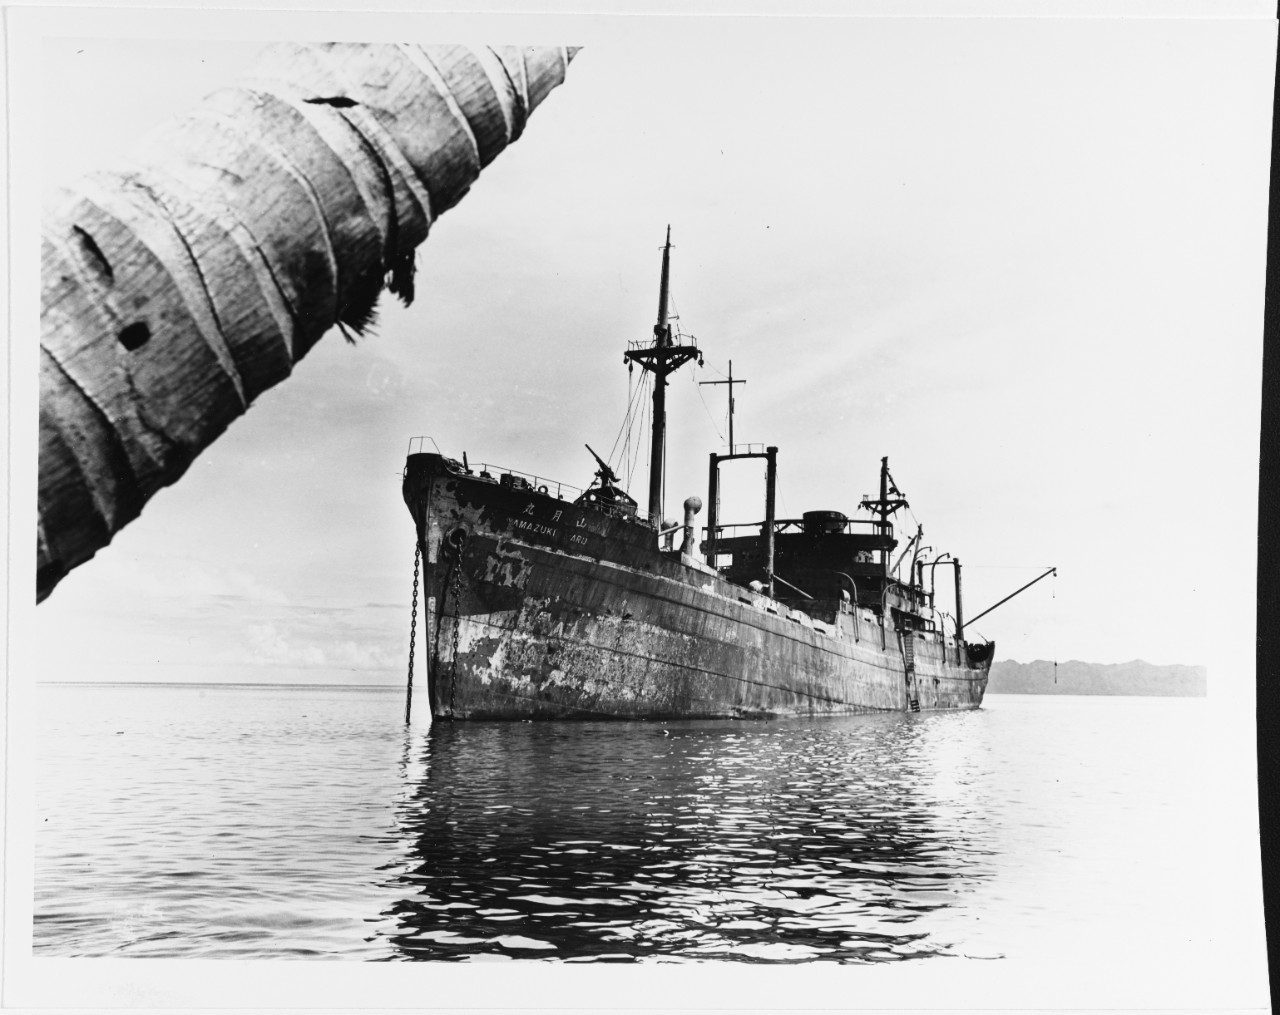 YAMAZUKI MARU (Japanese Cargo Ship), February 15, 1943